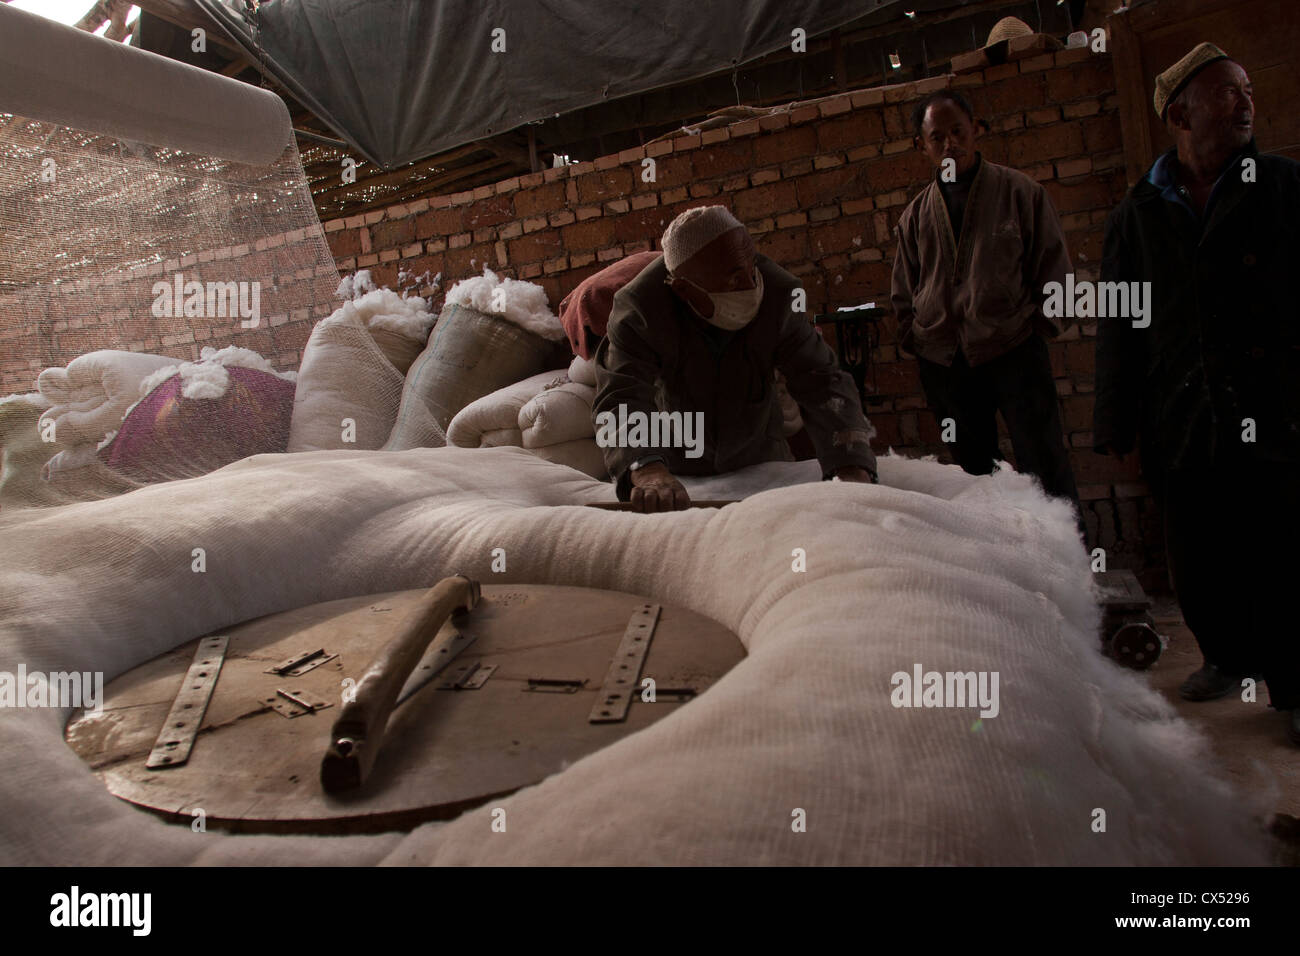 An Uighur man packs cotton before it is spun in Turpan, Xinjiang, China Stock Photo